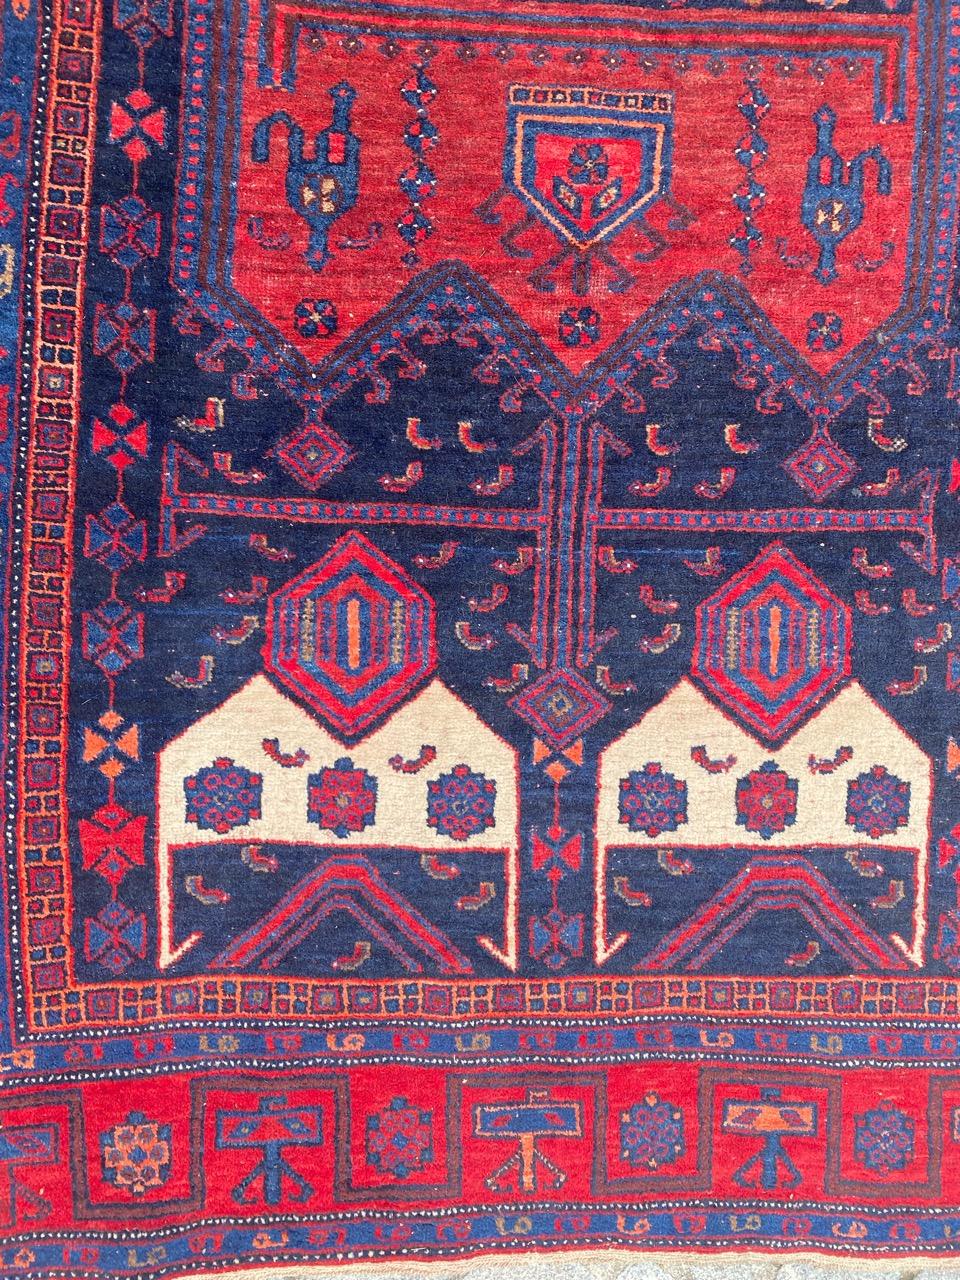 Hübscher Bijar-Teppich aus dem frühen 20. Jahrhundert mit schönem Tribal- und geometrischem Muster und schönen natürlichen Farben, vollständig handgeknüpft mit Wollsamt auf Wollfond.

✨✨✨
